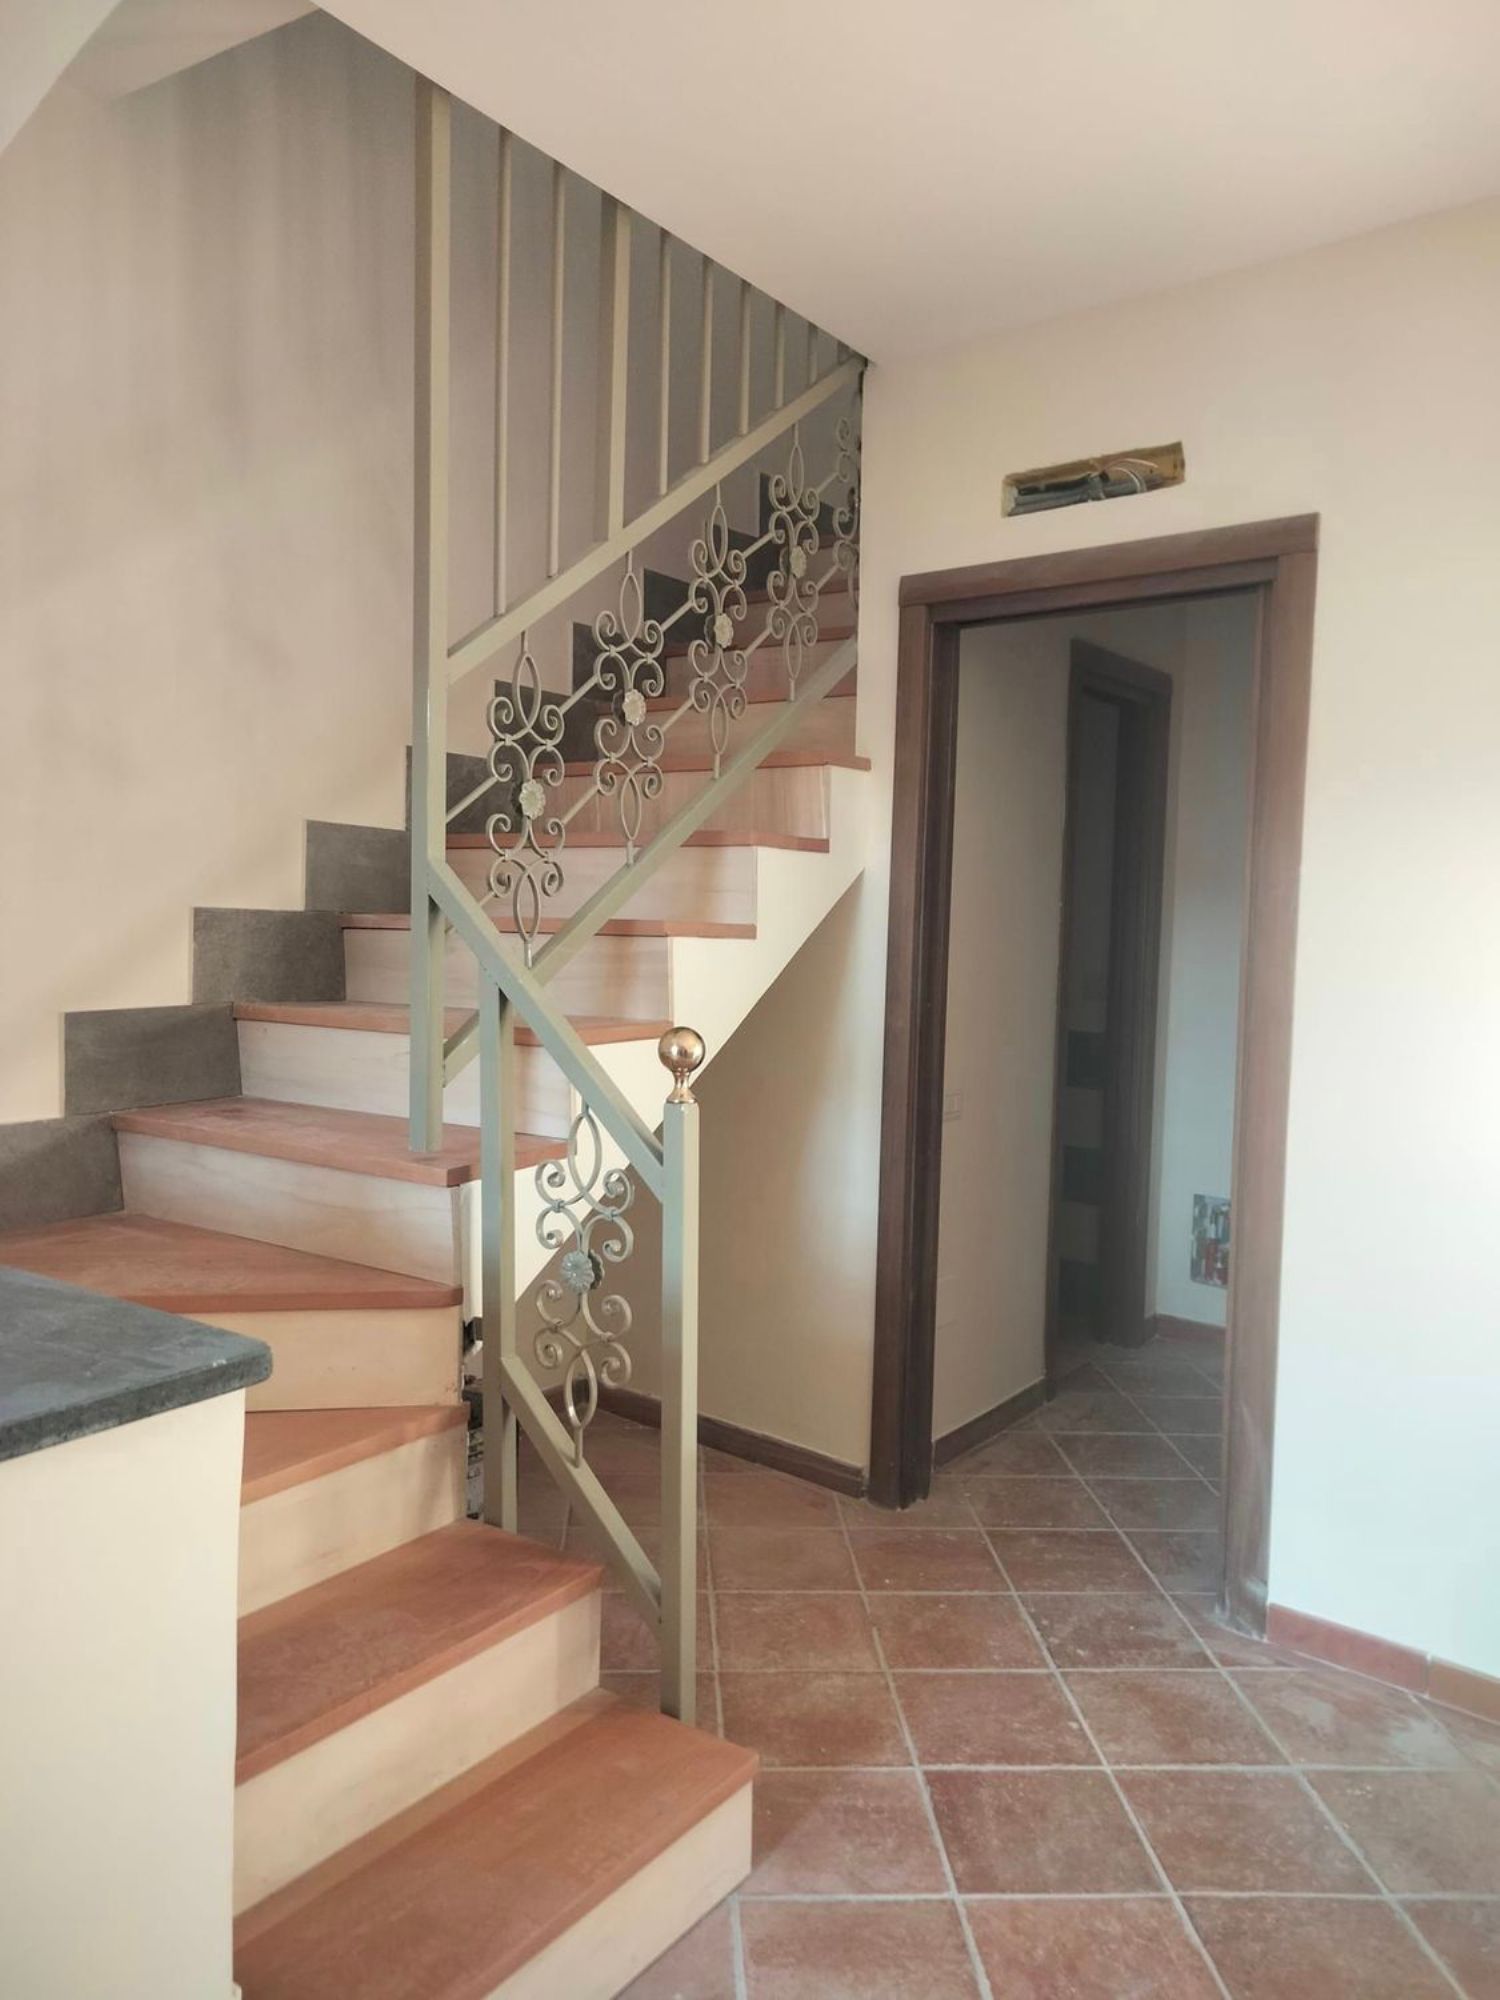 Duplex in vendita a Cava de' Tirreni, 3 locali, prezzo € 155.000 | PortaleAgenzieImmobiliari.it